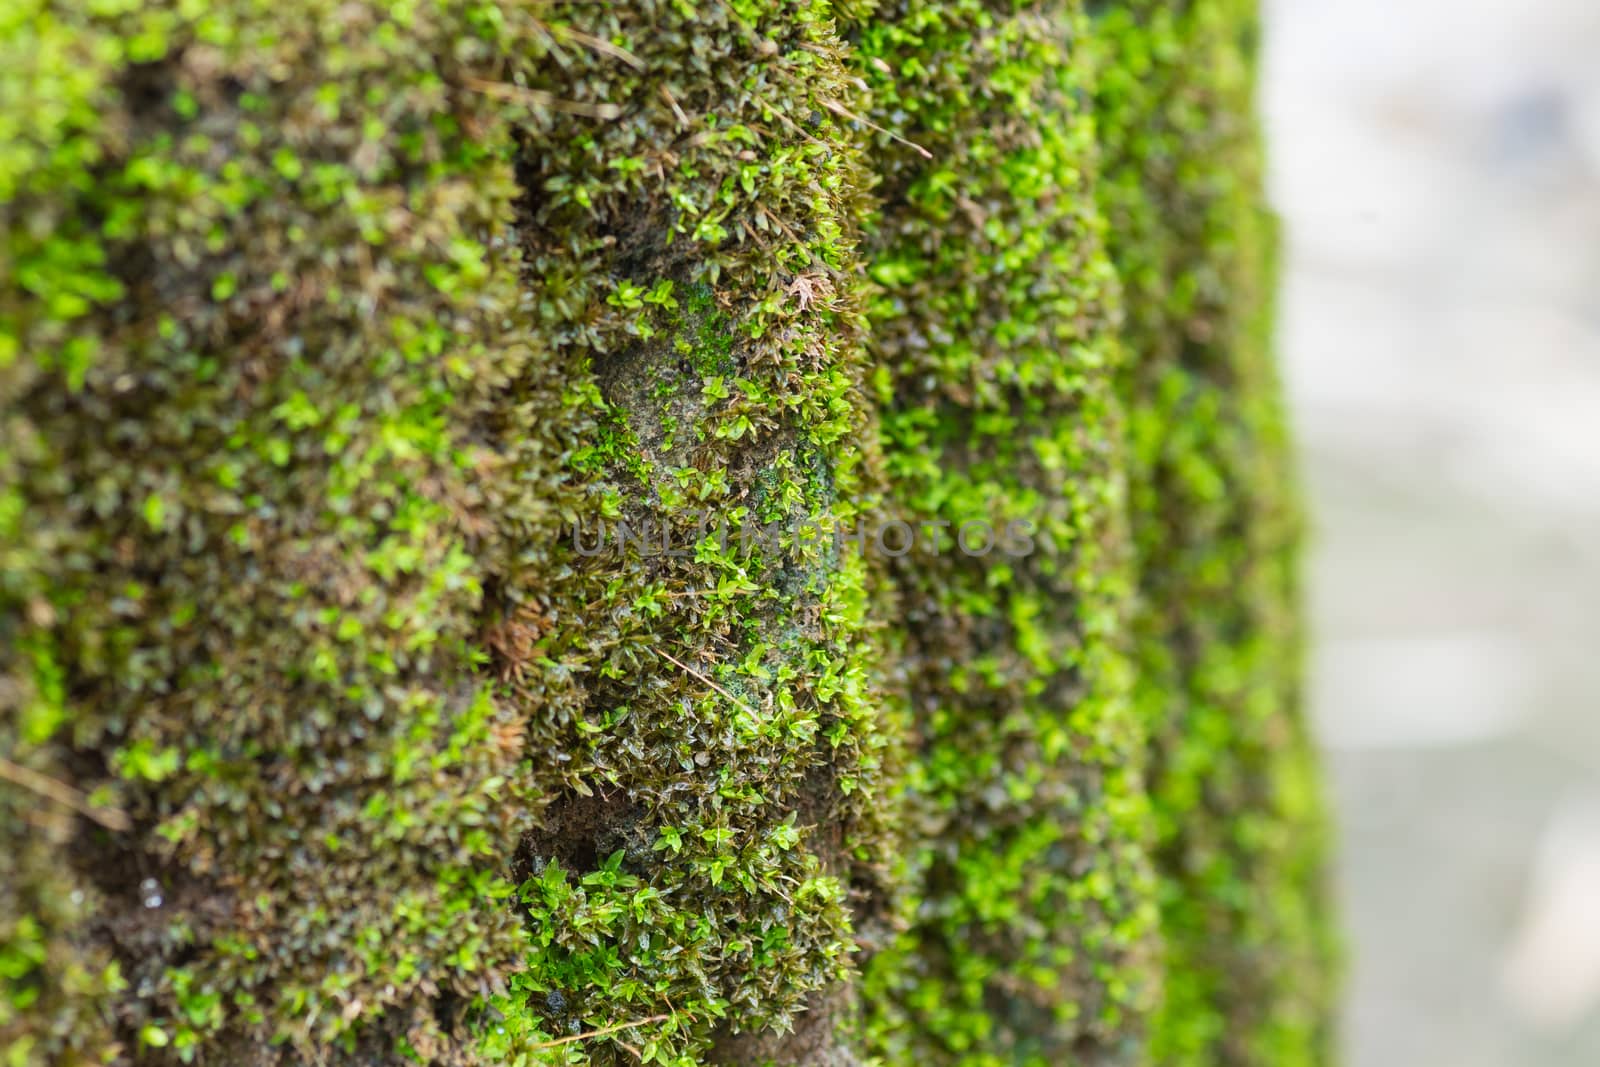 Moss or lichen on cement column.